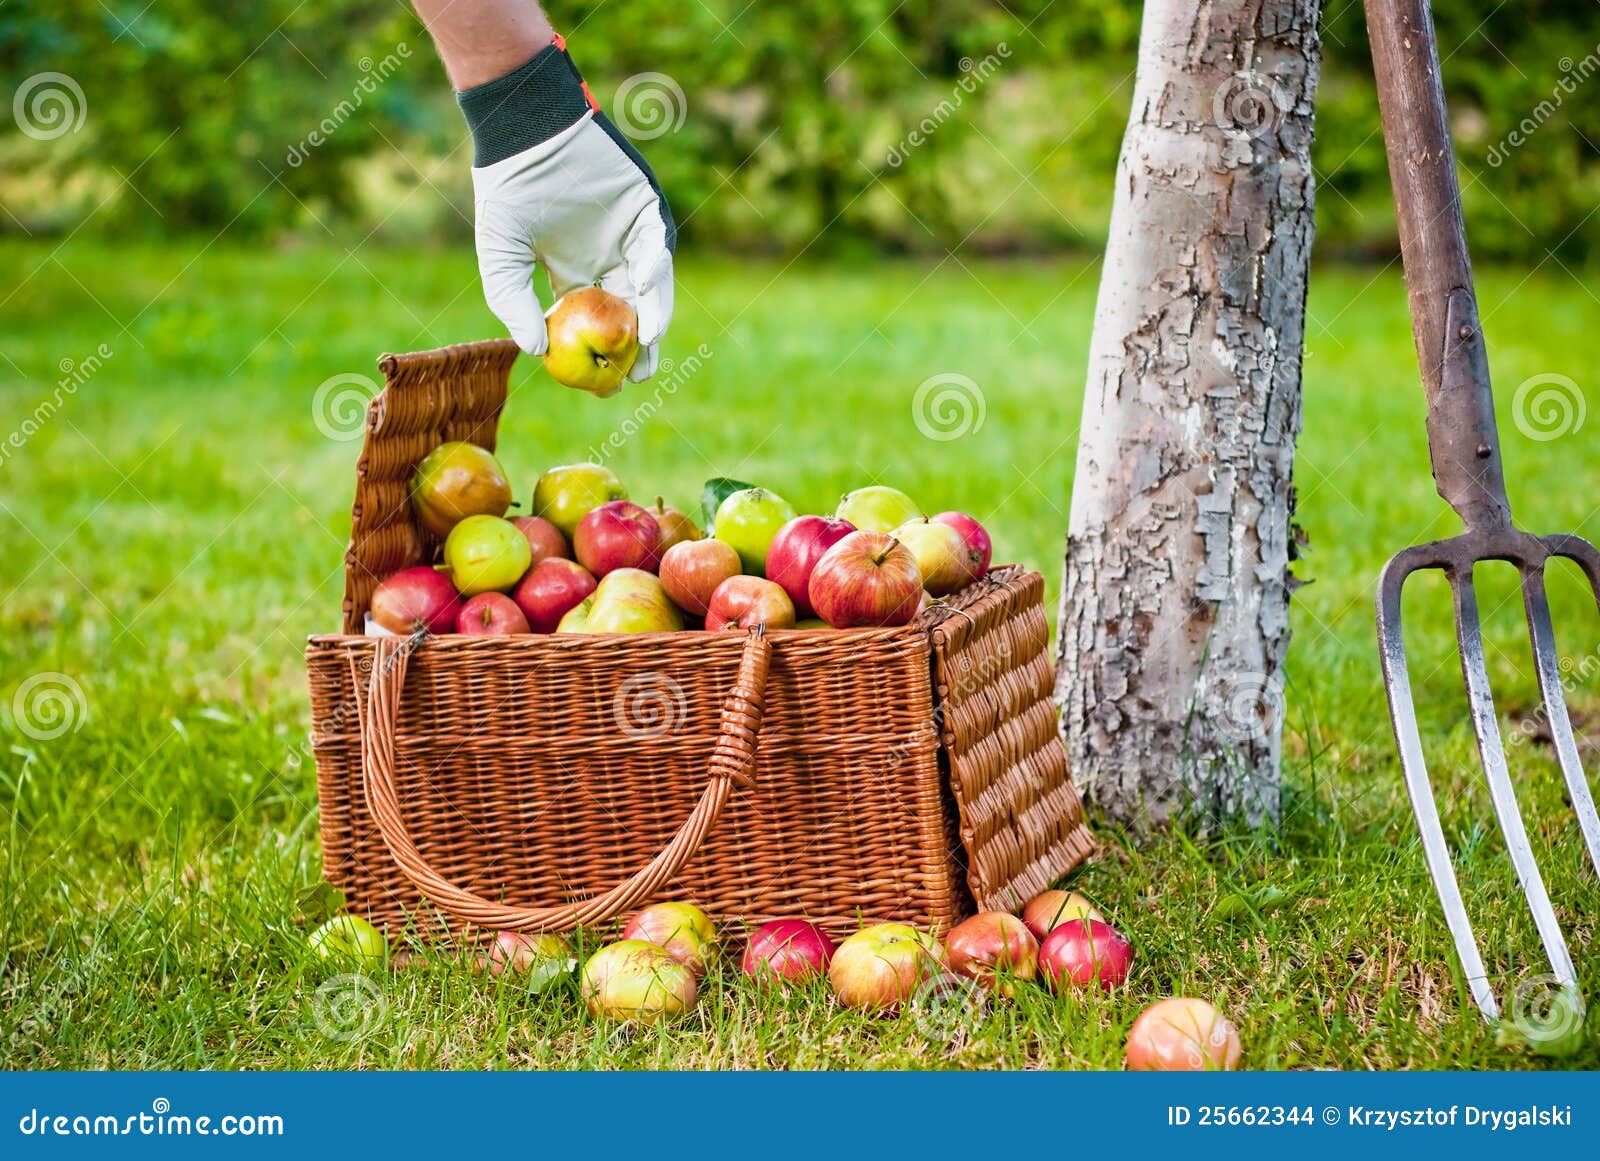 В корзину положили яблок